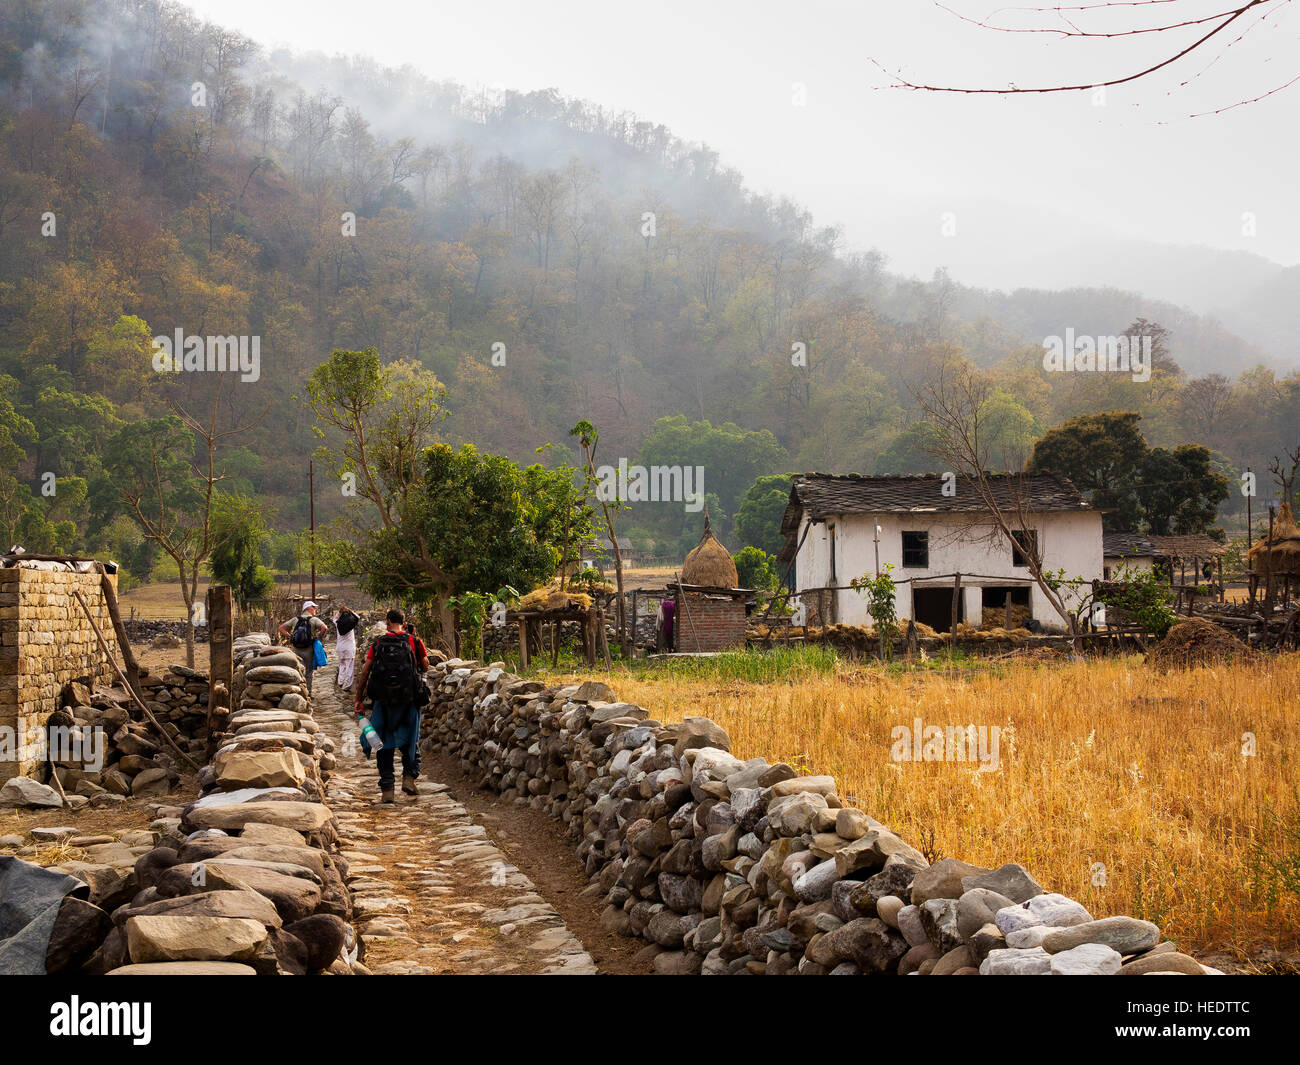 Chuka Dorf mit schweren Dschungel im Hintergrund. Chuka Dorf wurde von Jim Corbett in seinem Buch Maneaters Kumaon, Uttarakhand, Indien berühmt gemacht Stockfoto